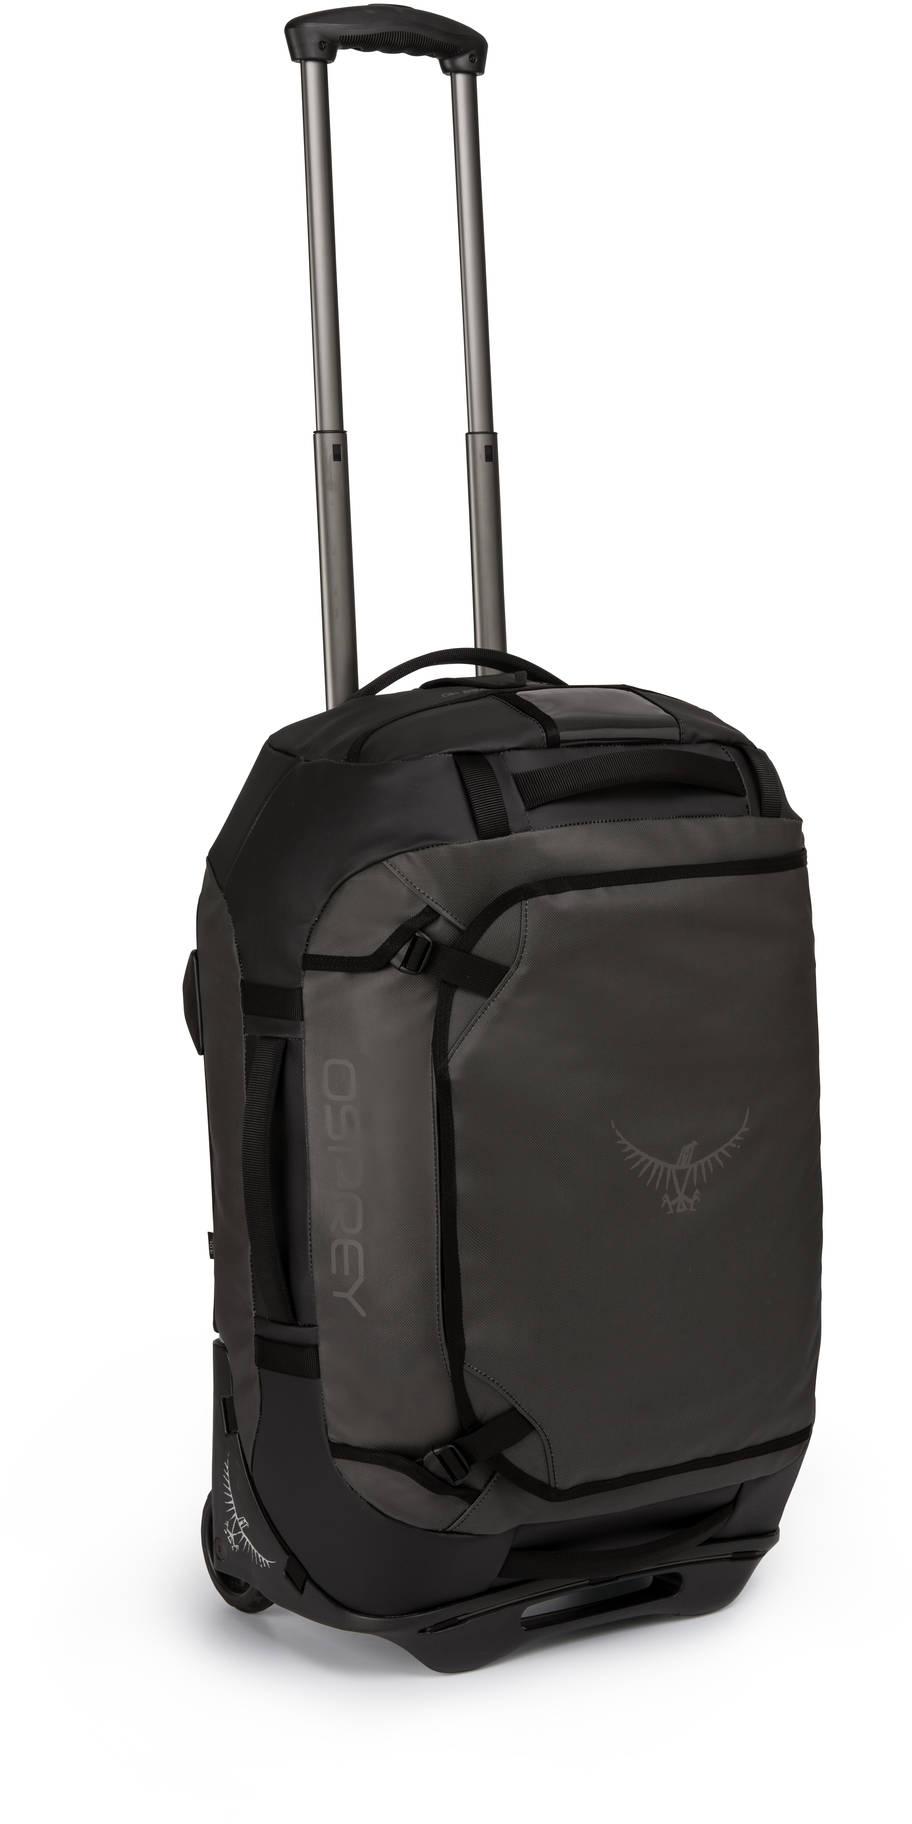 Osprey Rolling Transporter 40 Travel Bag 2018  Black